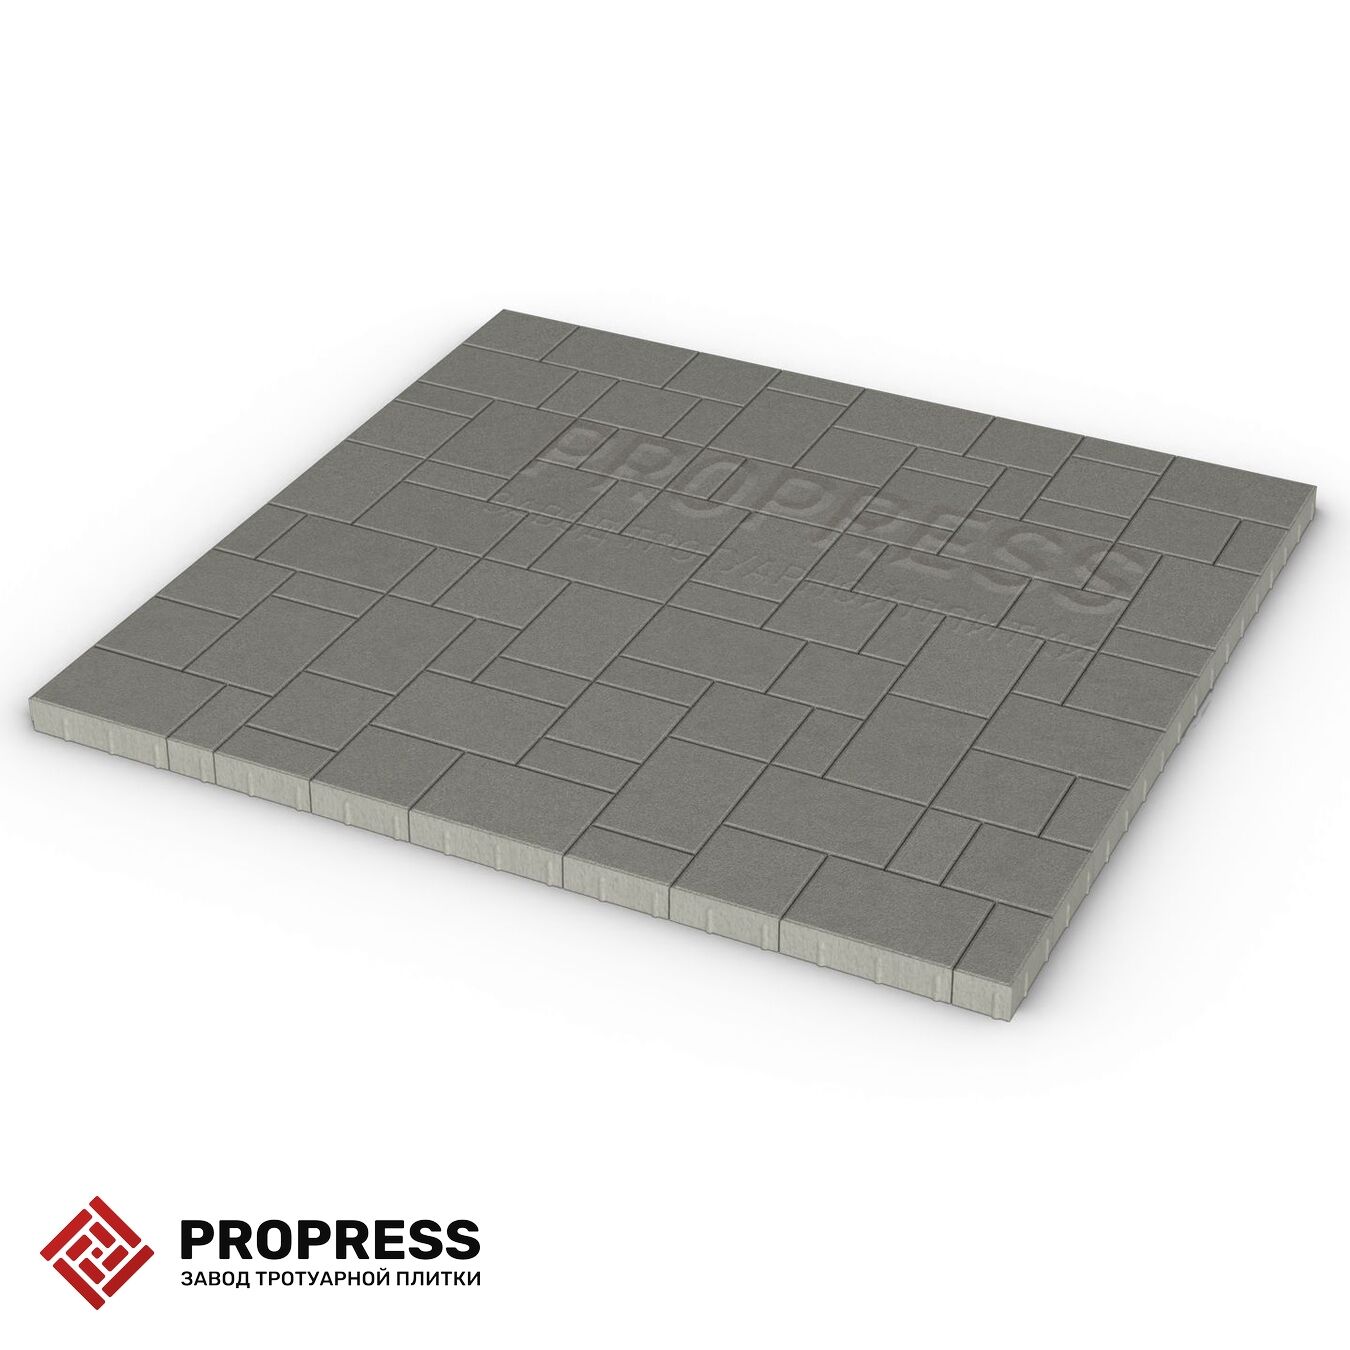 Тротуарная плитка Пропресс Лэндхаус Серый зернистый 60 мм